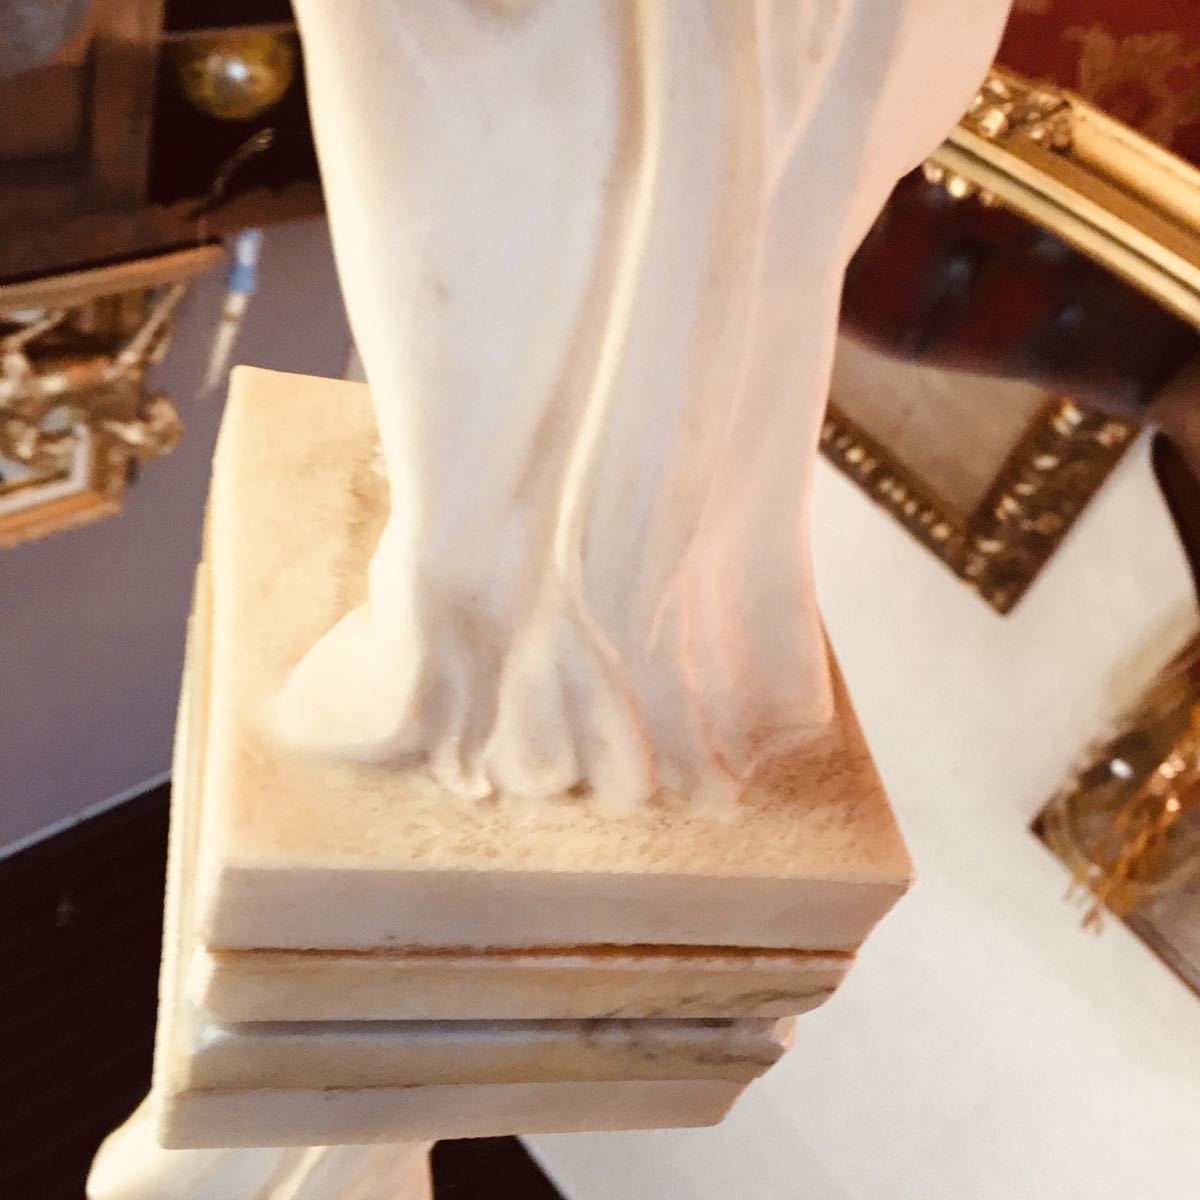 湯布院アンティーク A.SANTINI アンテルマ サンティーニ イタリア ミロのヴィーナス 細密彫刻 オブジェ 裸婦像 女神像 西洋彫刻サイズH 32_画像4